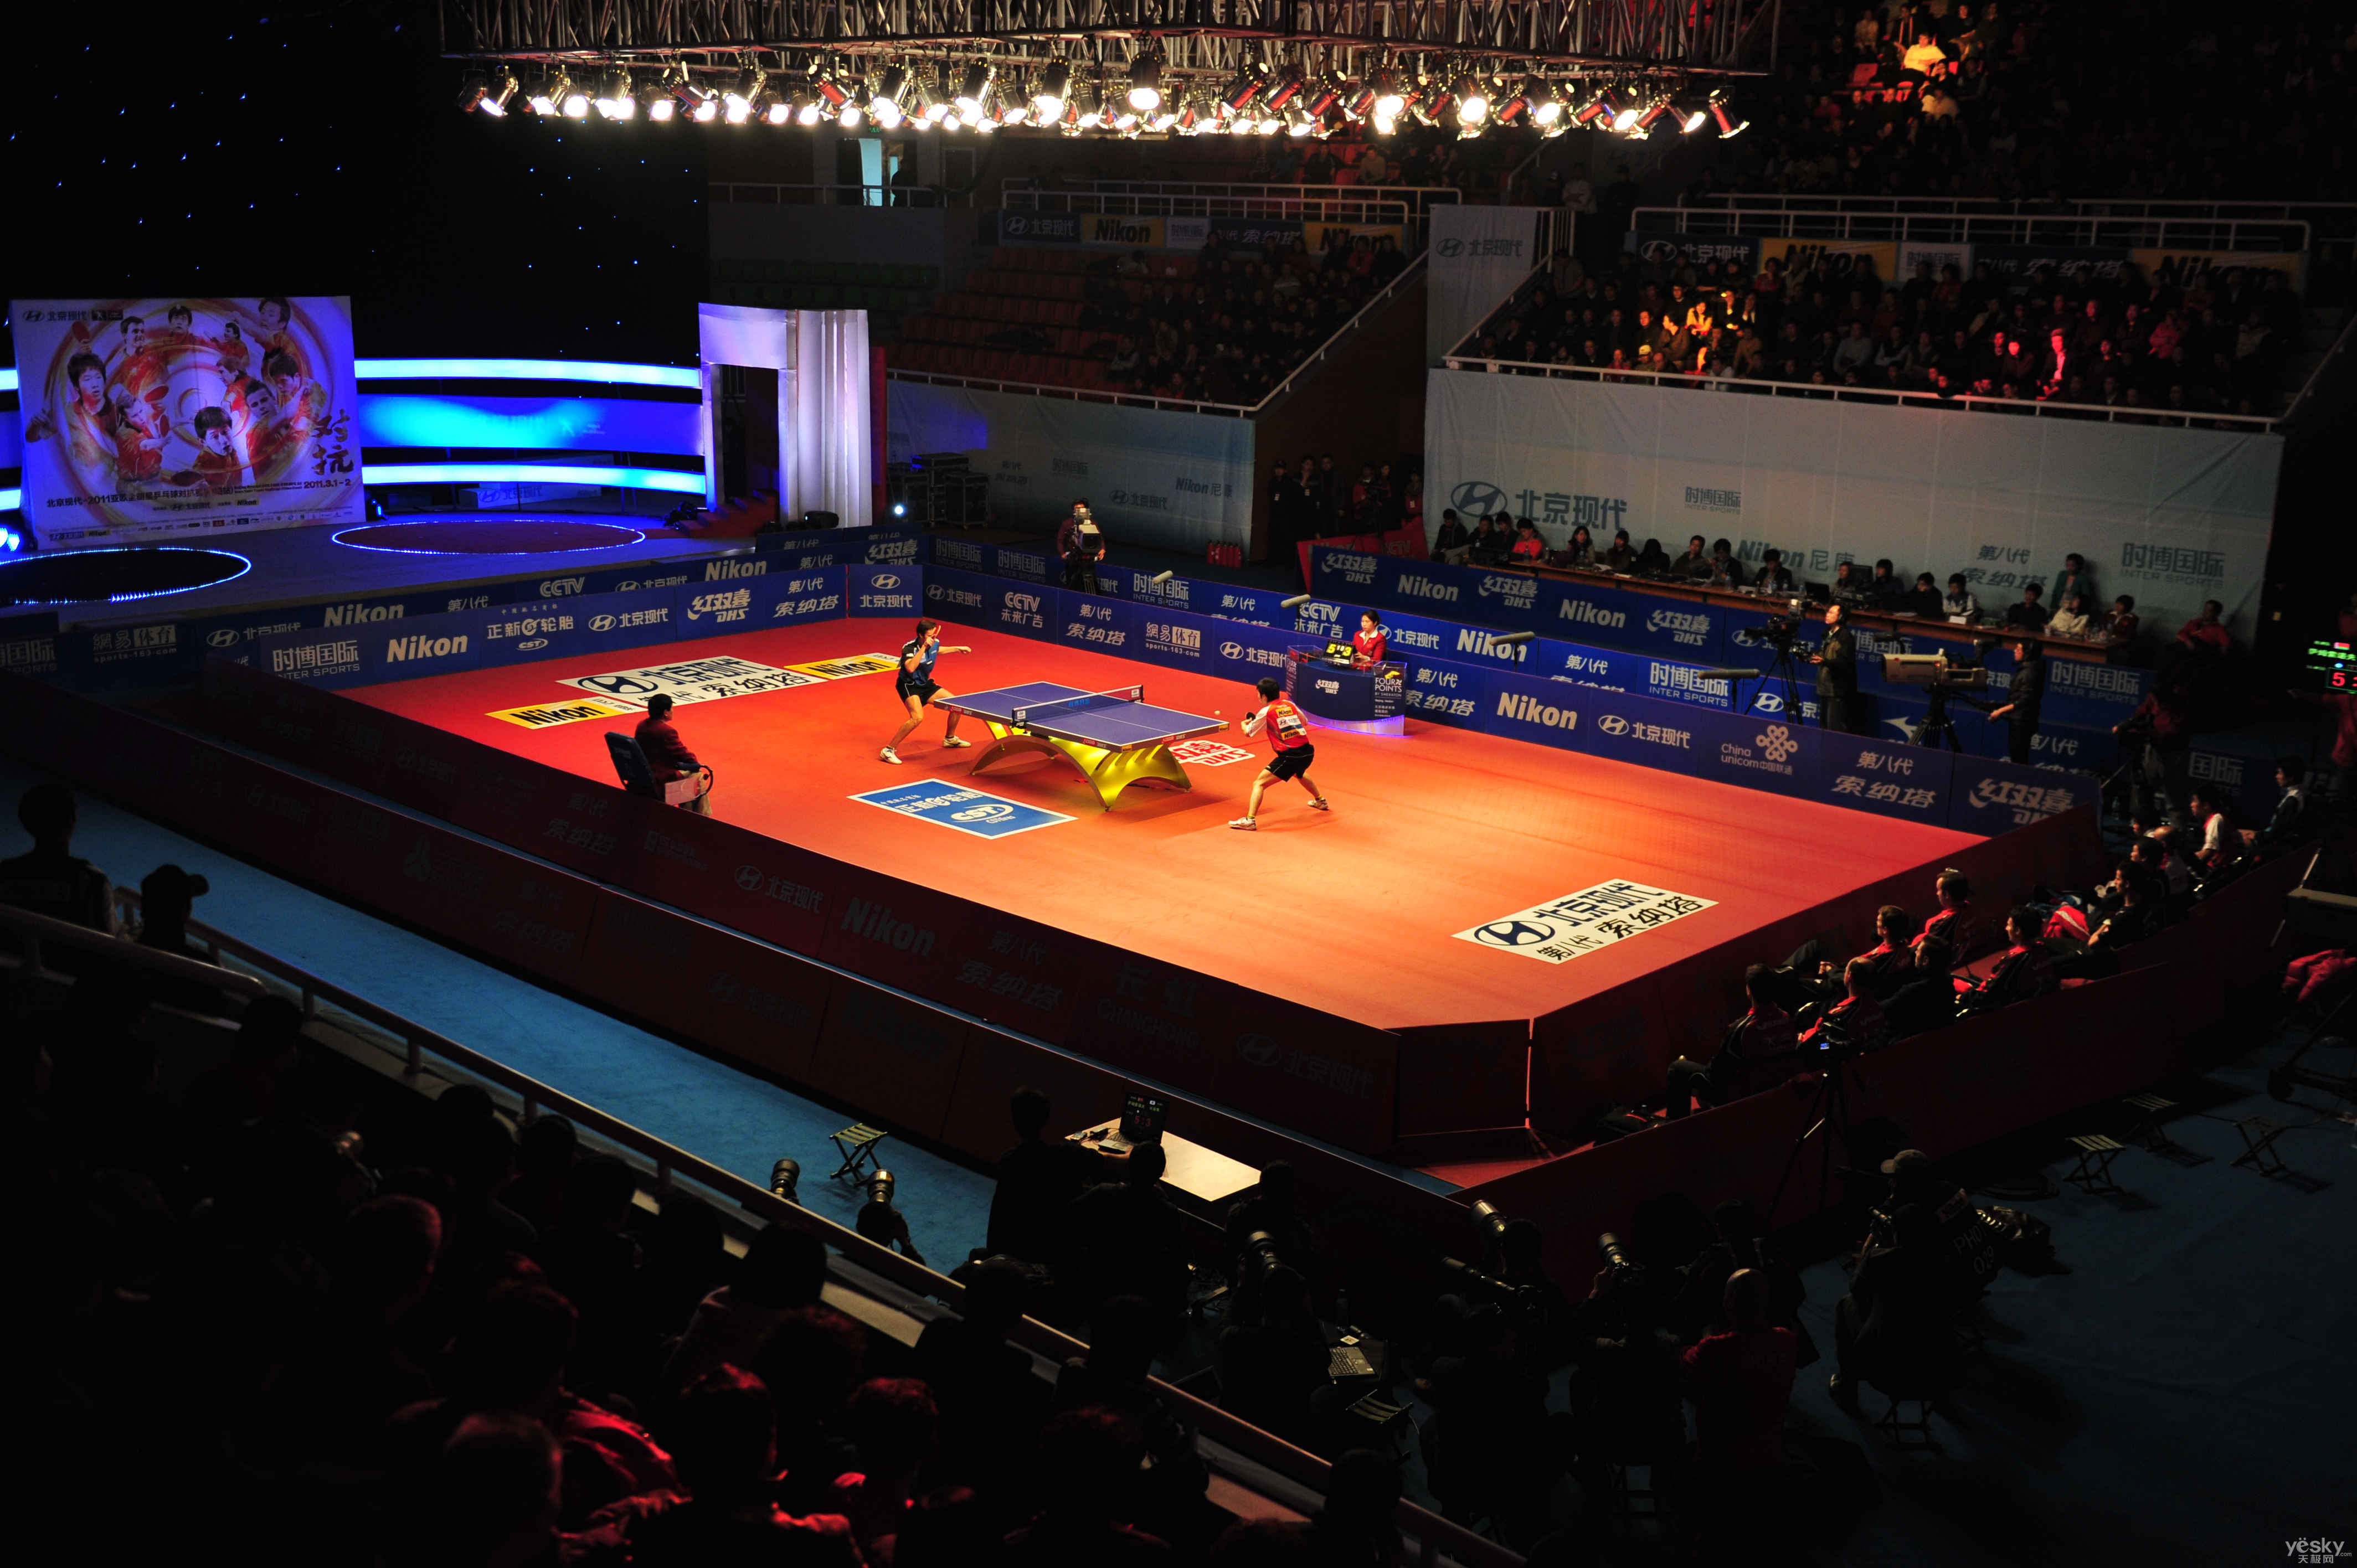 尼康赞助2011年亚欧全明星乒乓球对抗赛